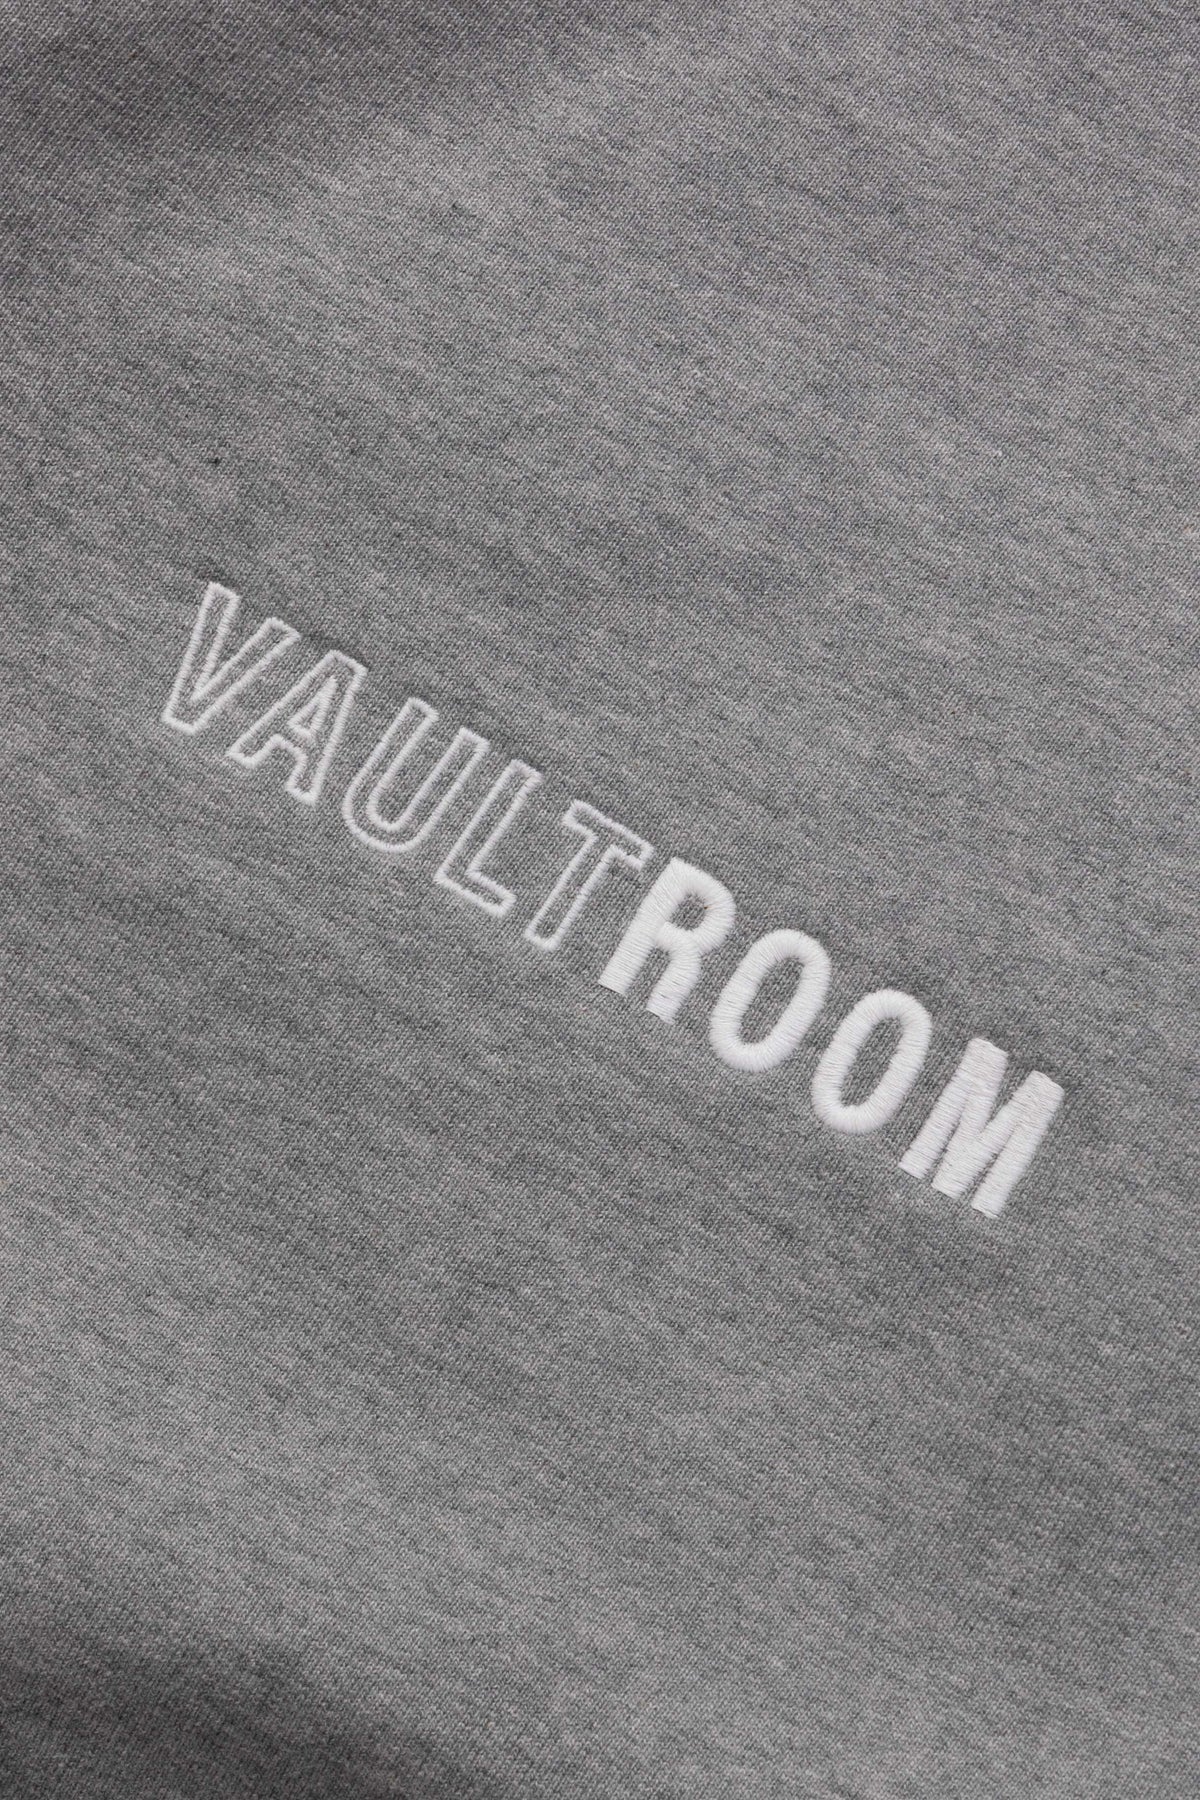 【M】vaultroom OOIS Hoodie / BLK